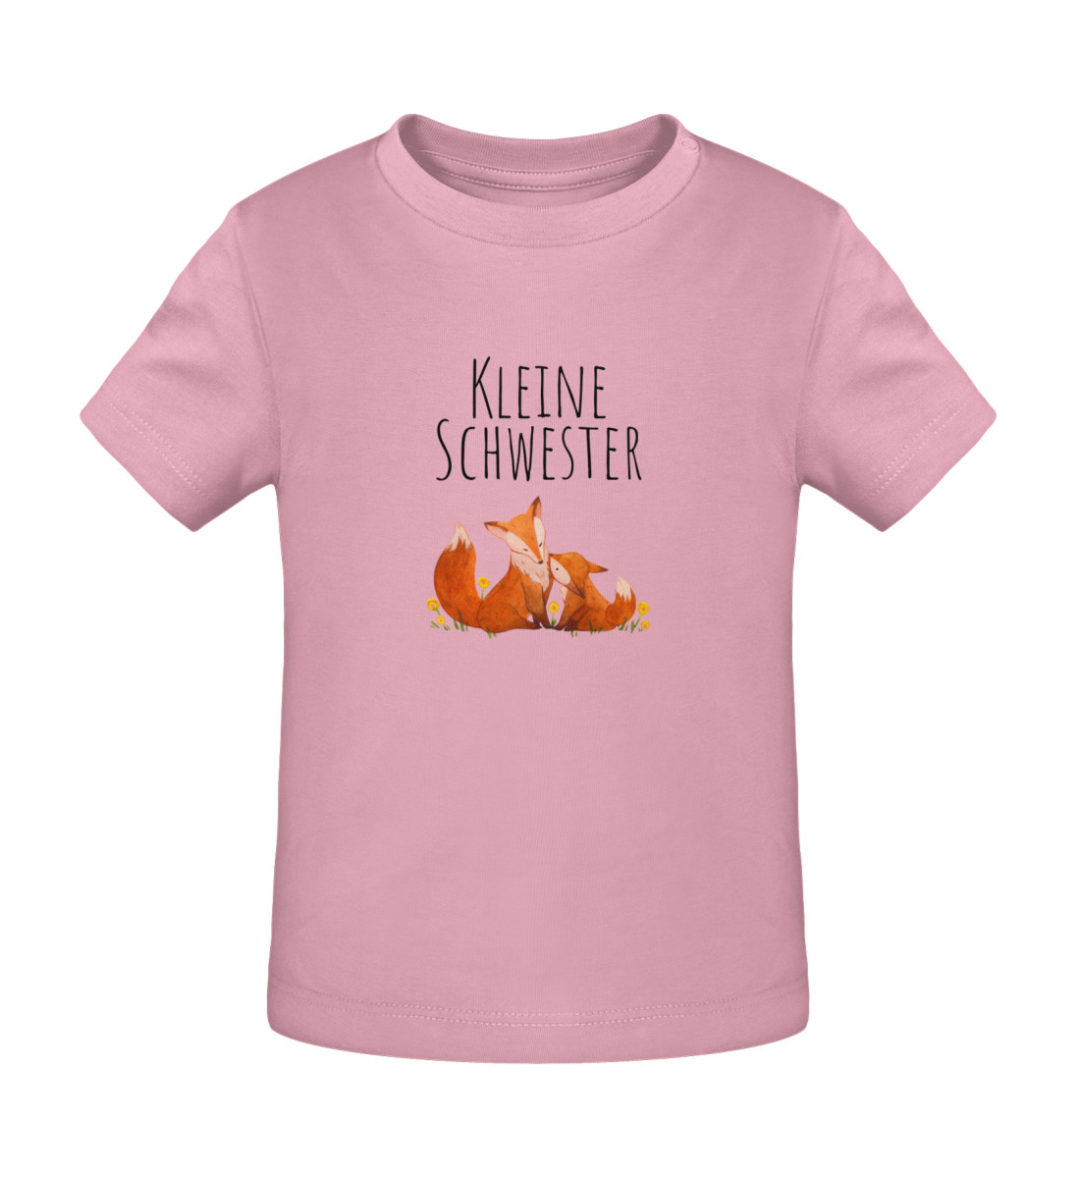 Kleine Schwester - Baby Creator T-Shirt ST/ST-6883